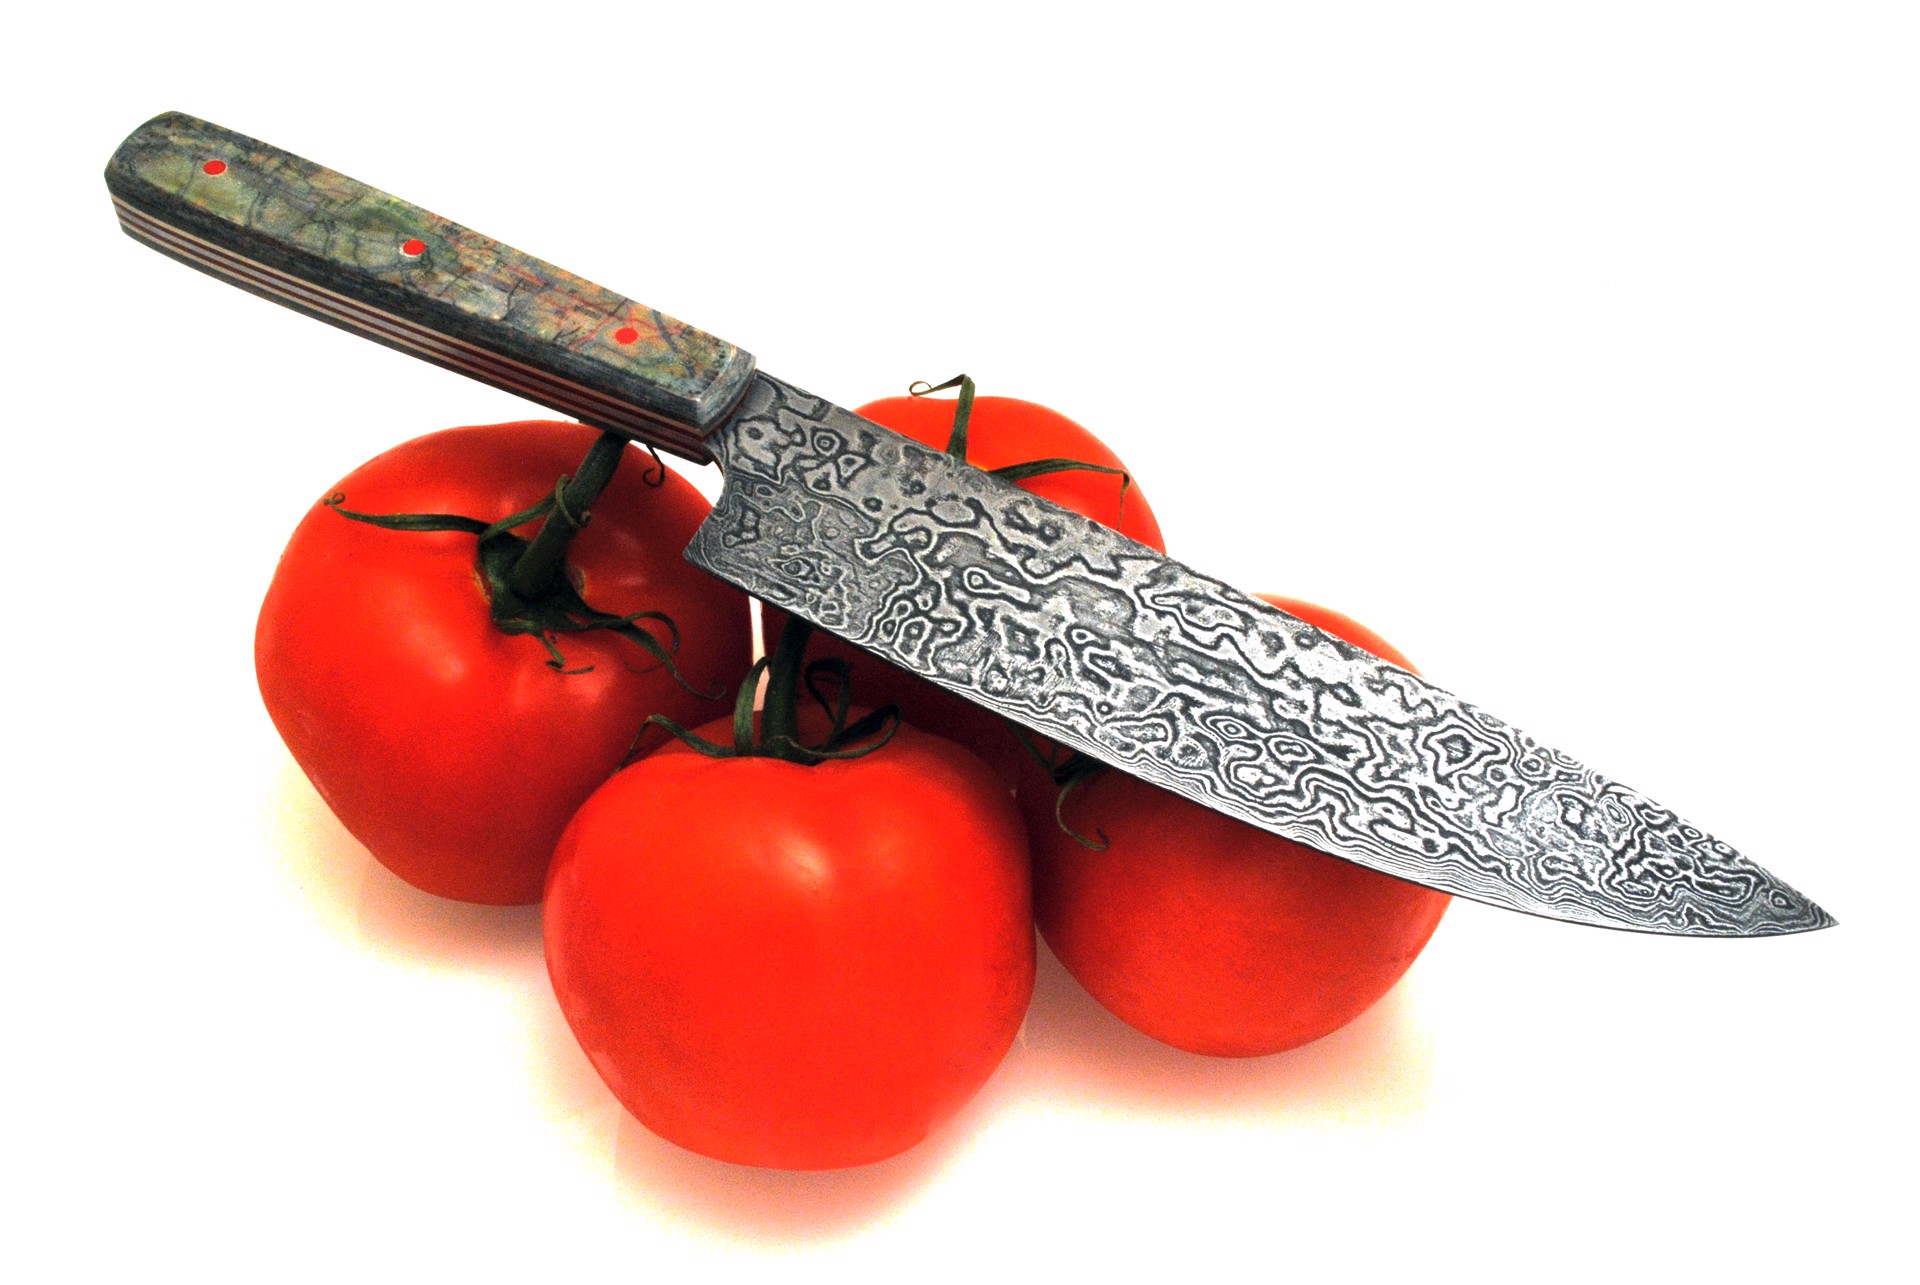 Chef Knife by Tedd McDonah